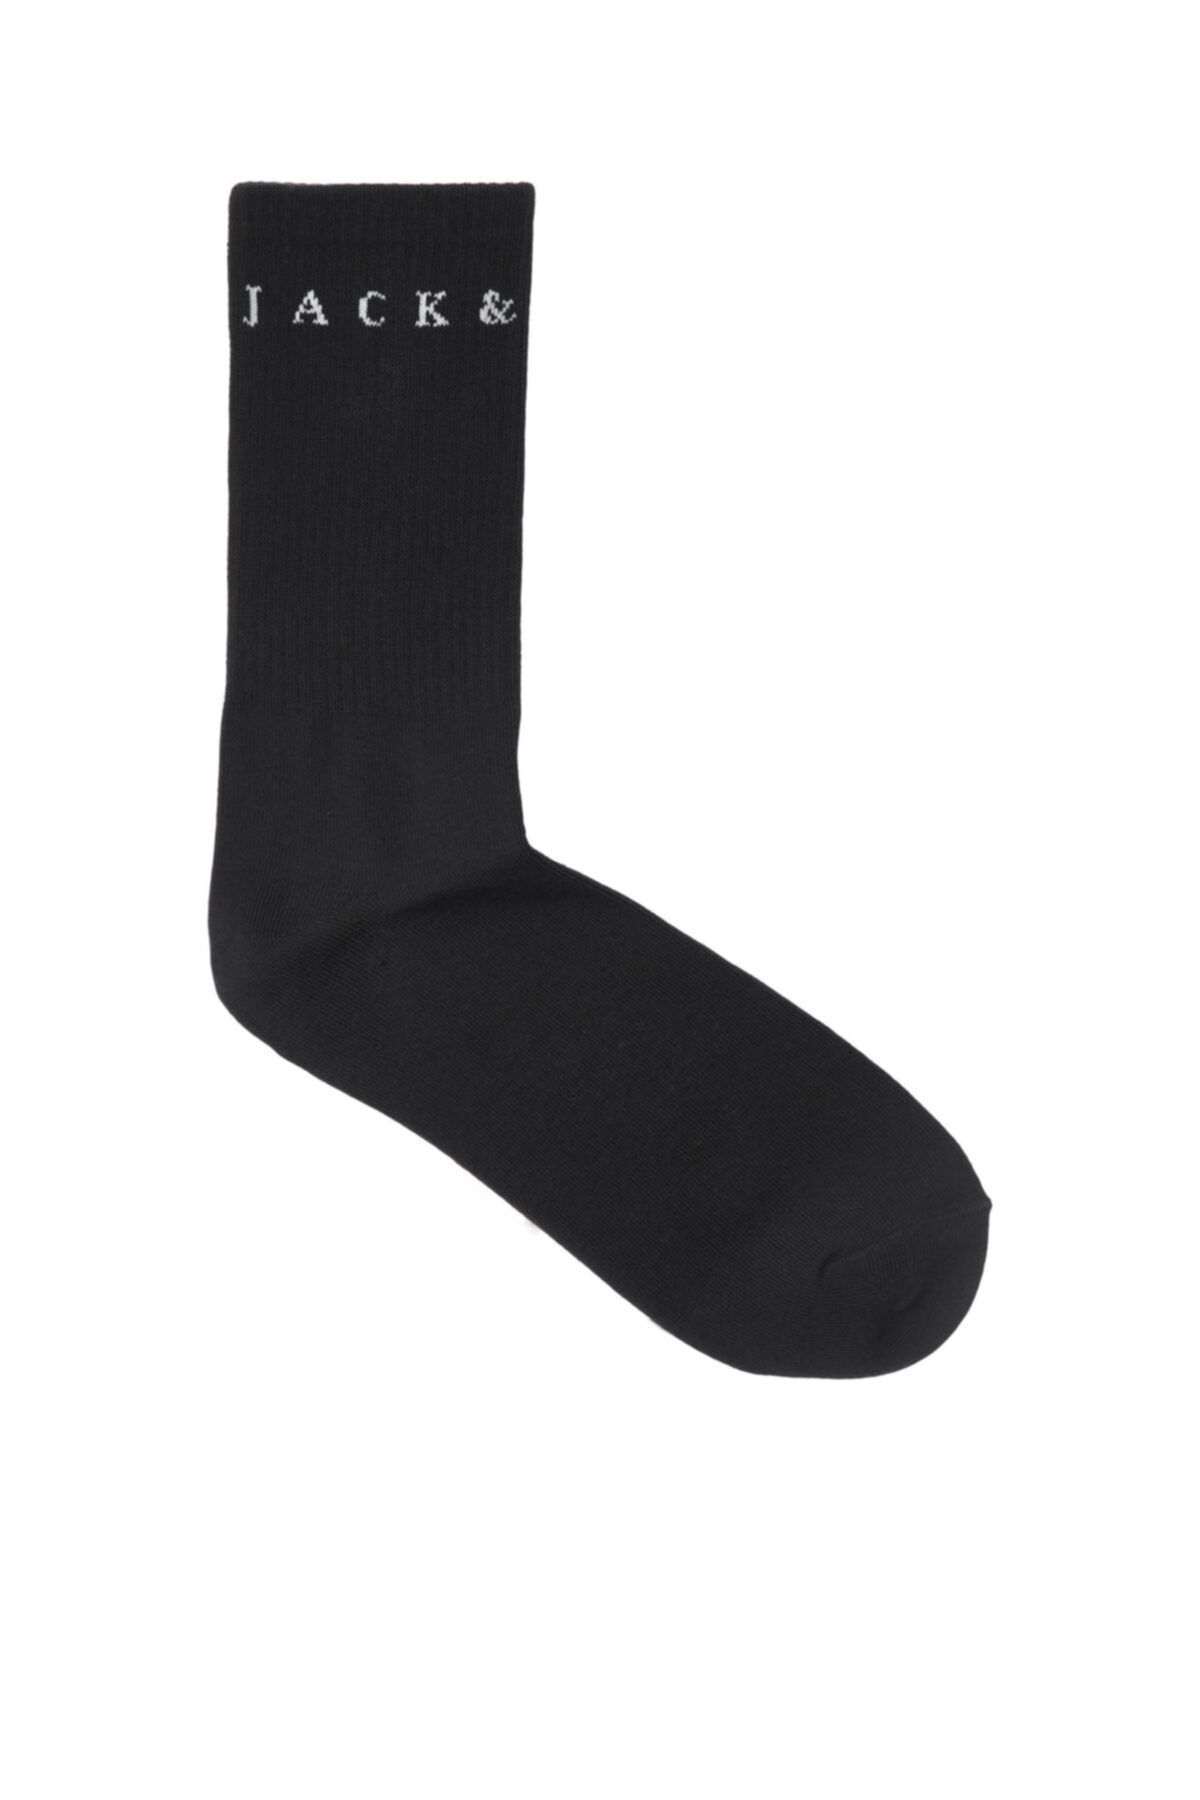 Jack & Jones Copenhagen Tennis Socks Erkek Siyah Çorap 12204814-01